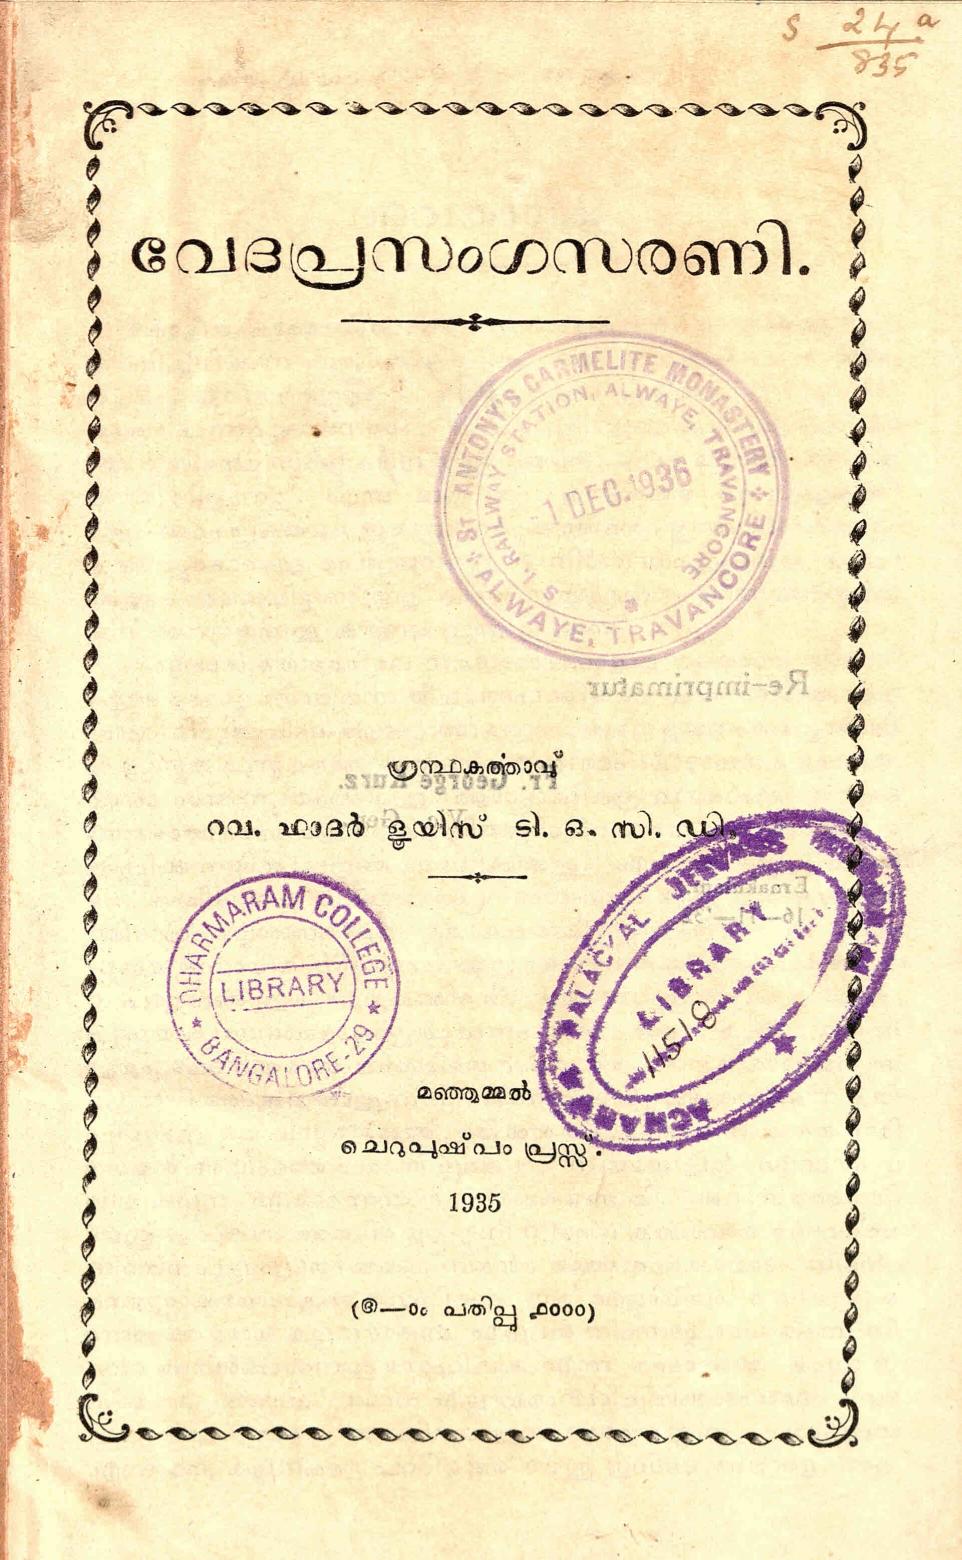  1935 - വേദപ്രസംഗസരണി - ളൂയീസ്